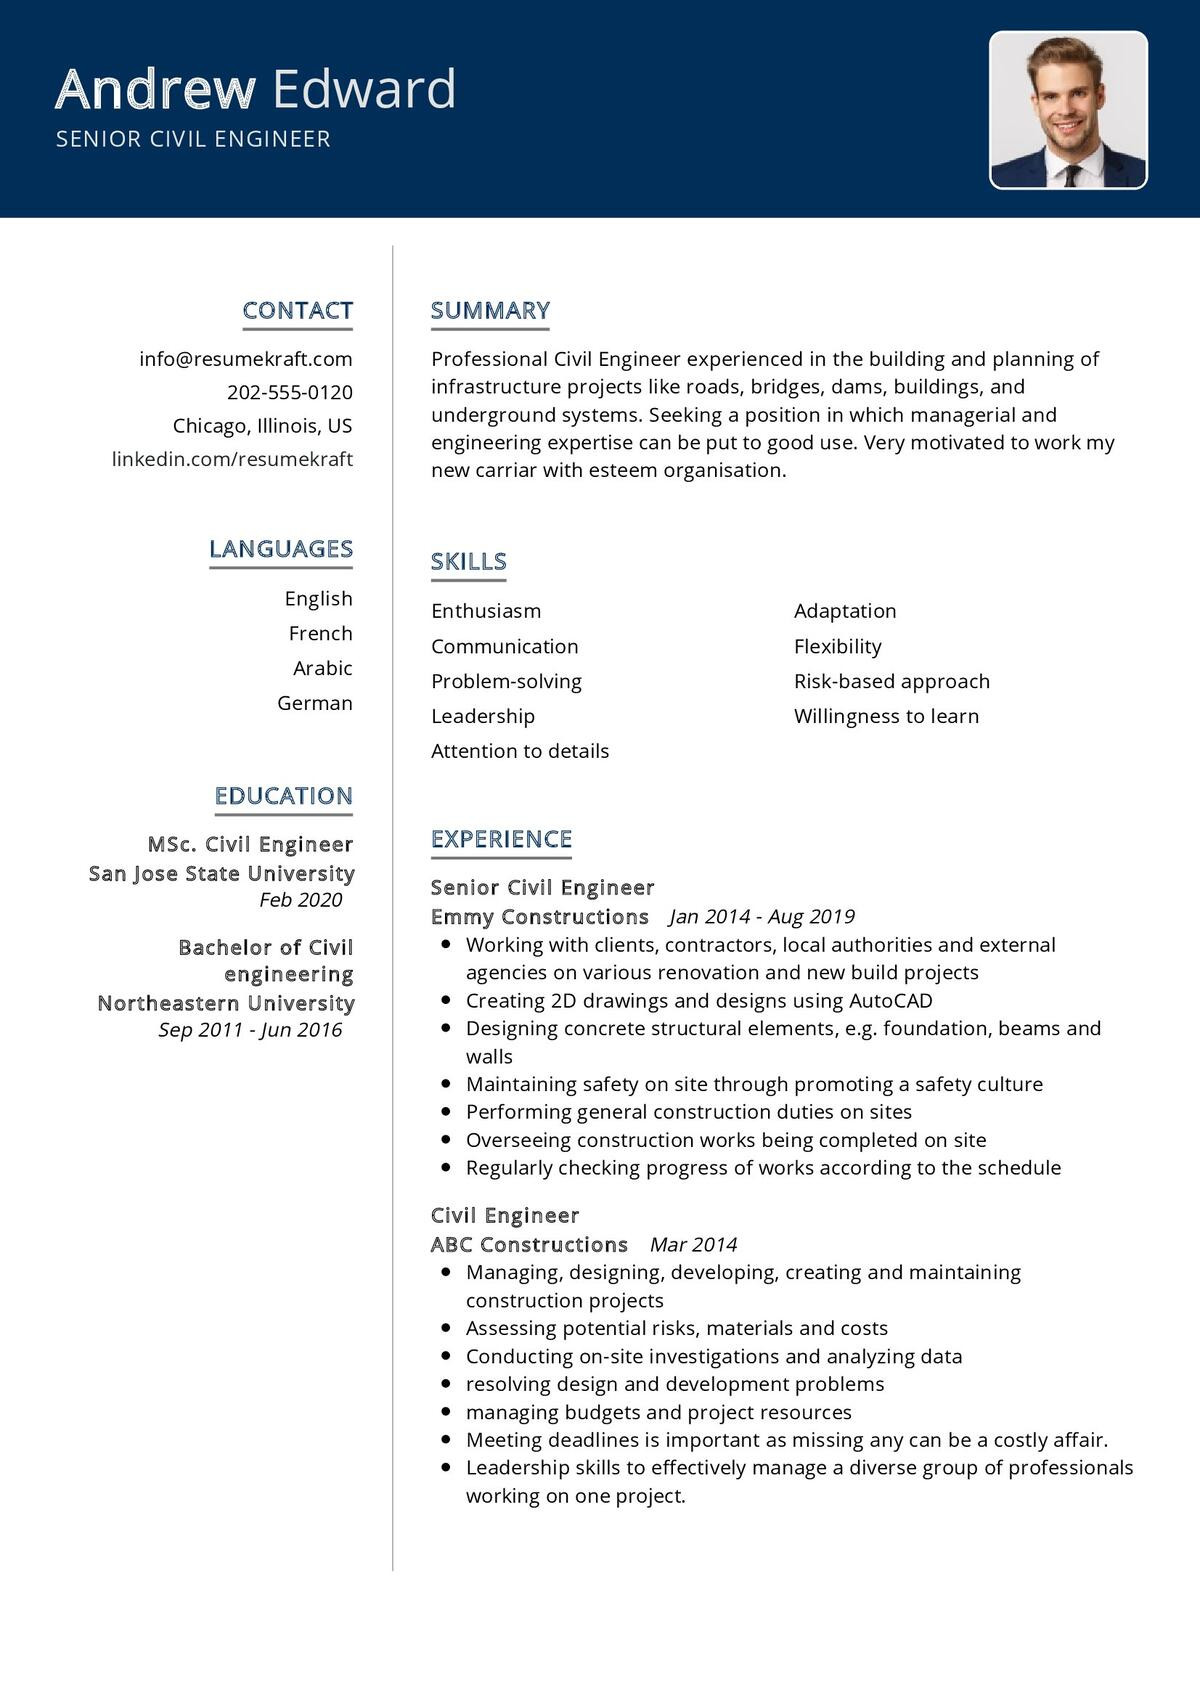 Sample Resume for Land Development Drafting Work Senior Civil Engineer Resume Sample 2021 Writing Guide – Resumekraft